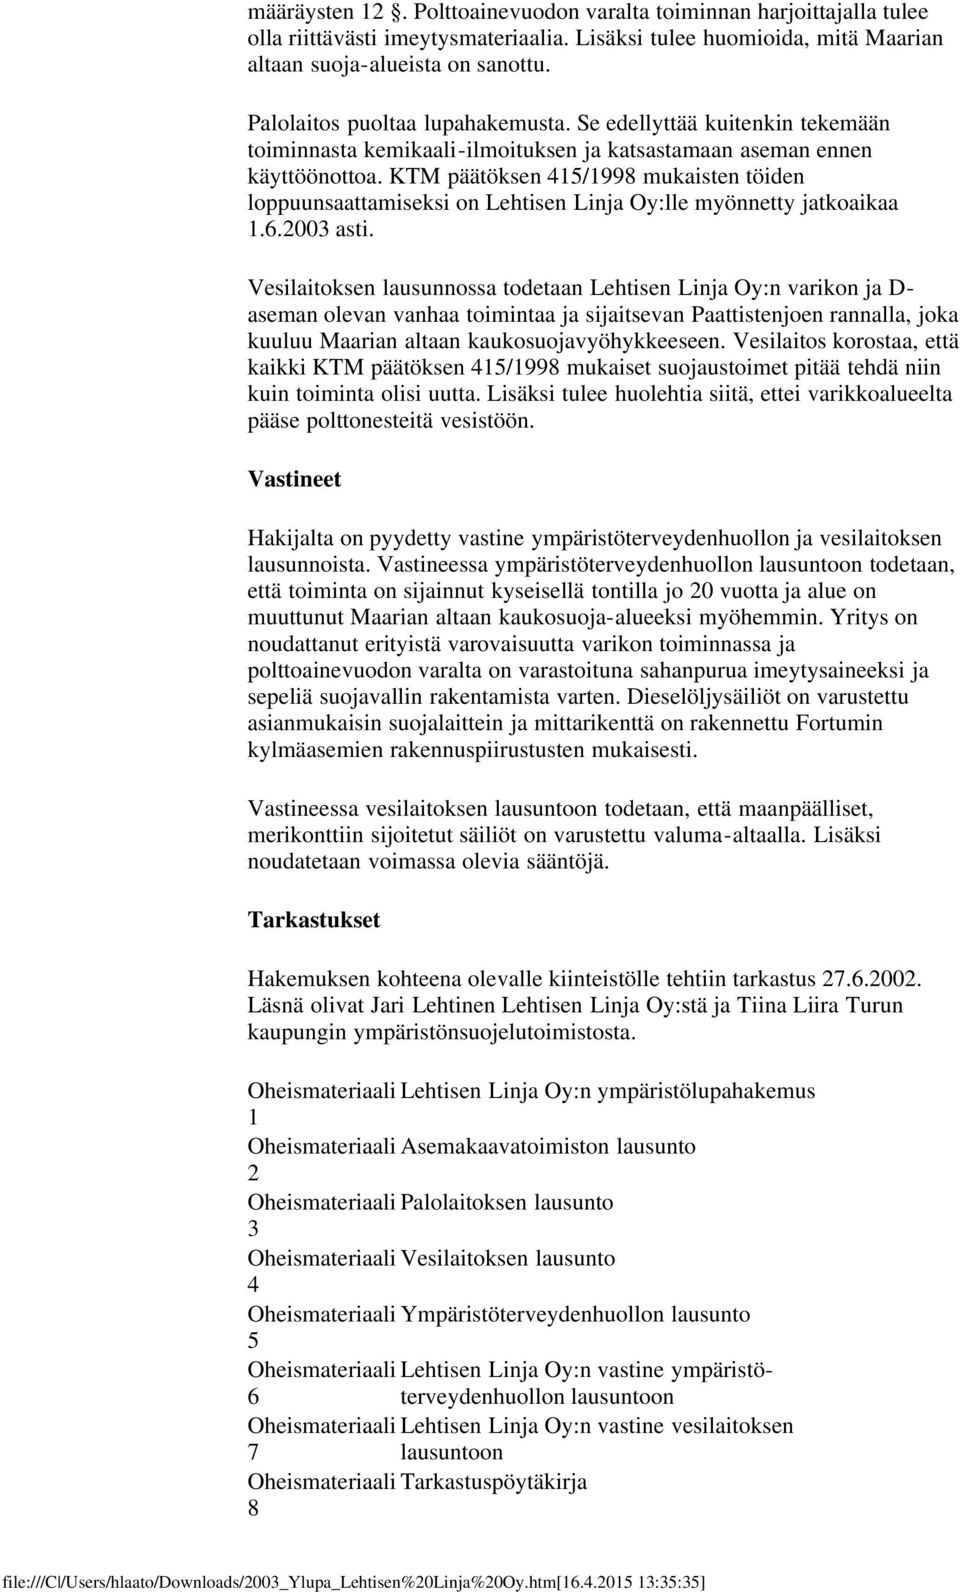 KTM päätöksen 415/1998 mukaisten töiden loppuunsaattamiseksi on Lehtisen Linja Oy:lle myönnetty jatkoaikaa 1.6.2003 asti.